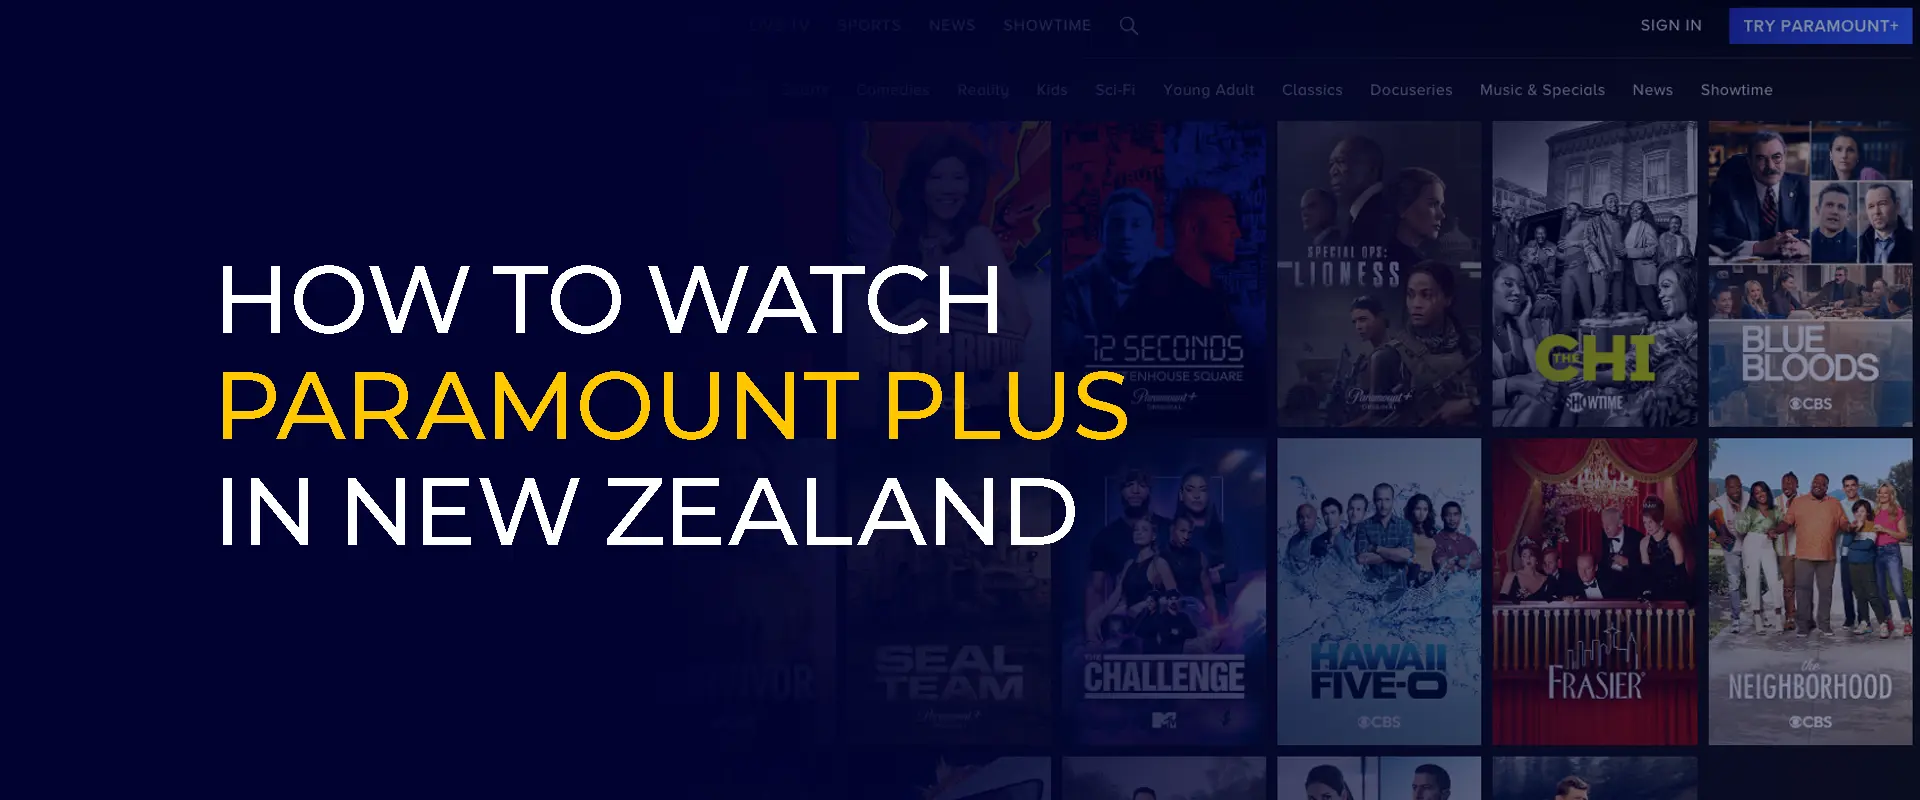 Hur man tittar på Paramount Plus i Nya Zeeland